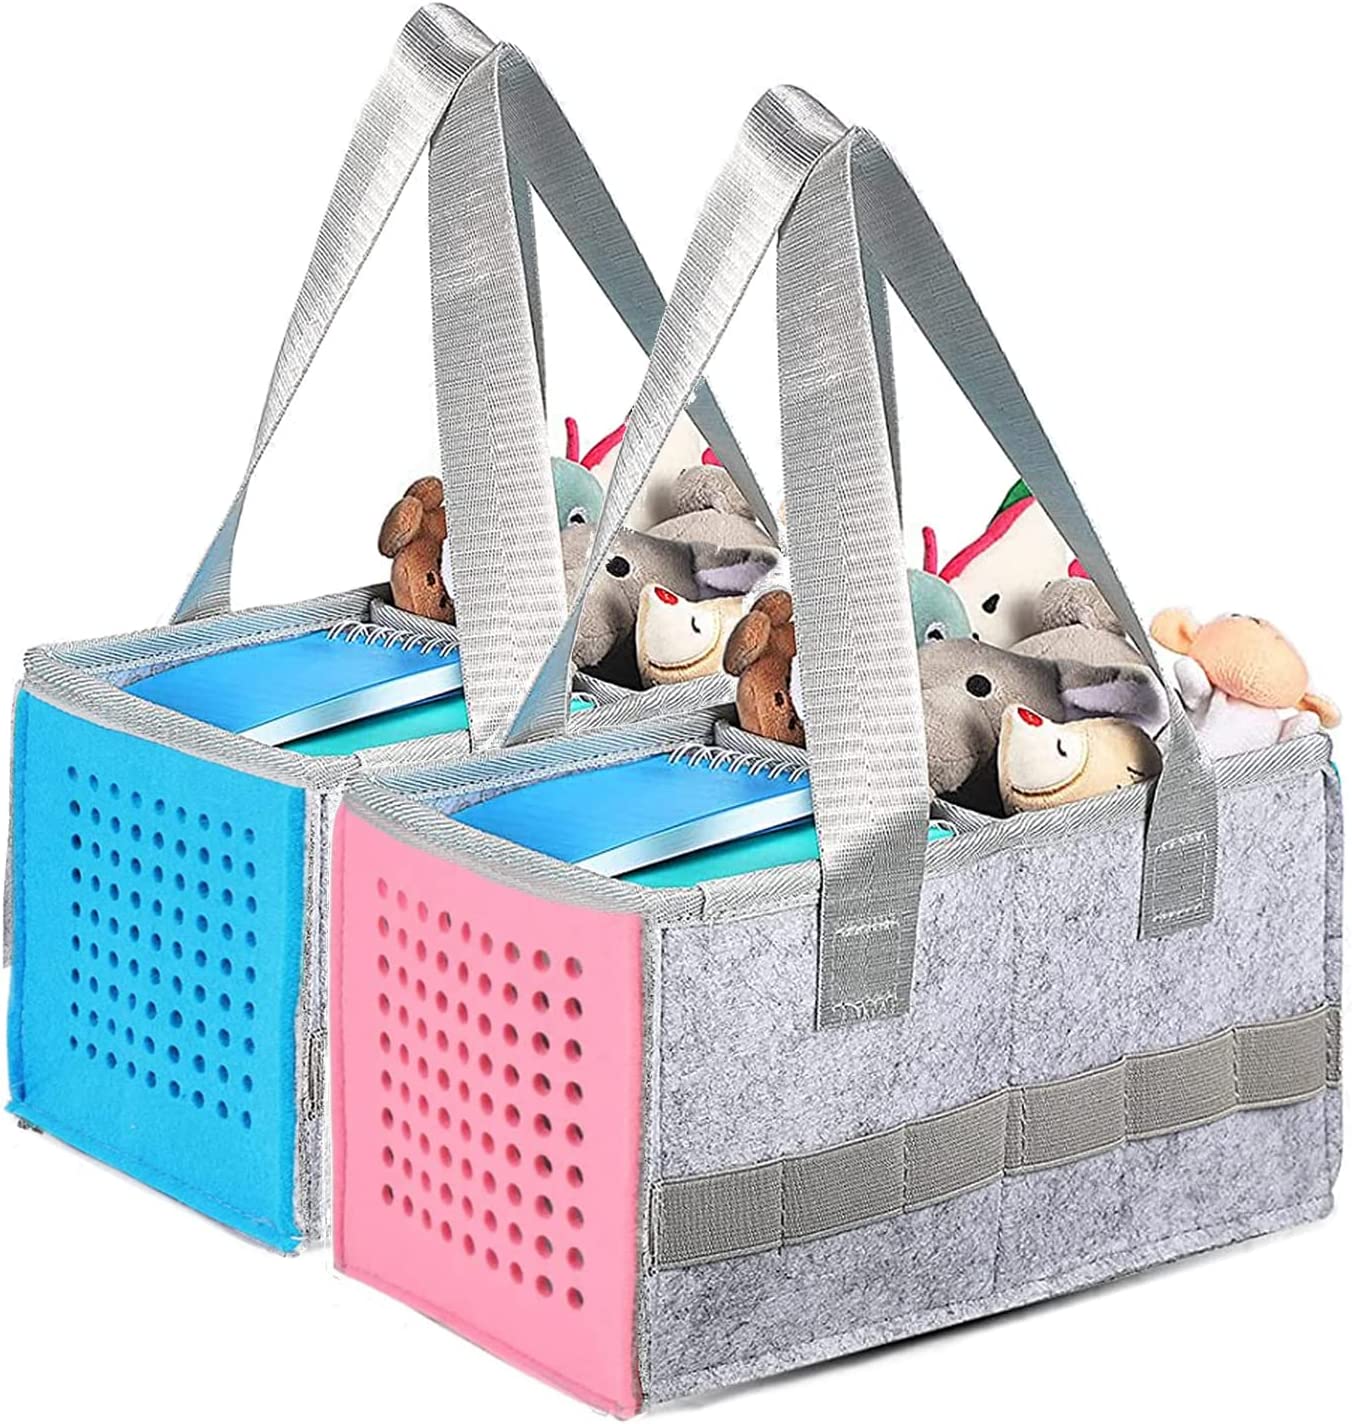 토니박스 오디오 플레이어 스타터 세트용 2팩 캐리어 가방, 토니 스타터 세트 수납 가방용 펠트 정리 케이스 (블루+핑크)